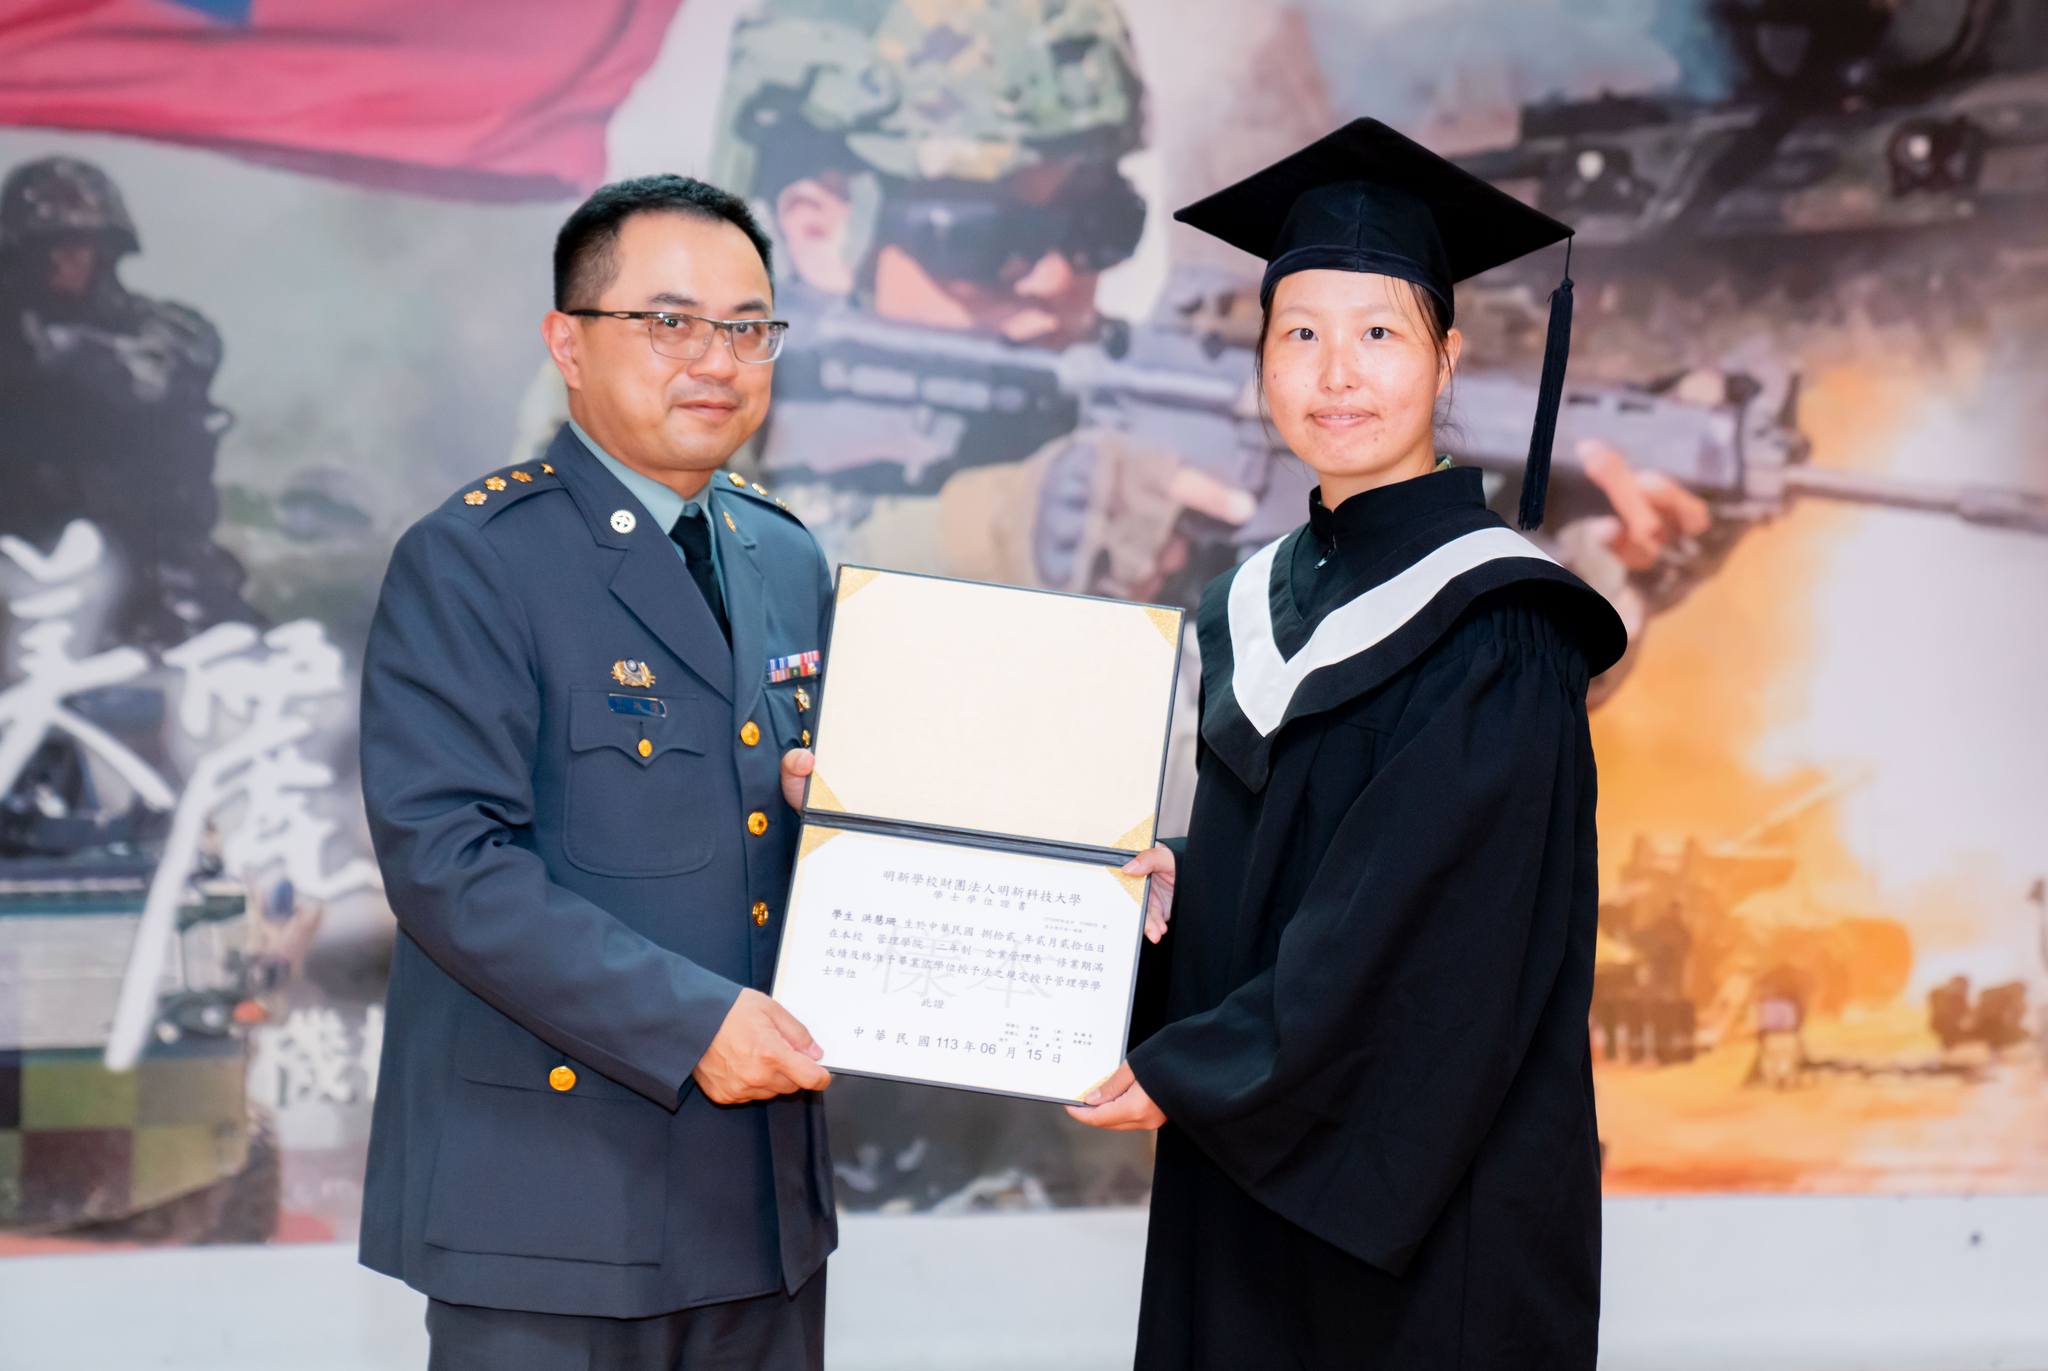 025陸軍269旅副旅長張上校頒發畢業證書予畢業生洪慧珊同學